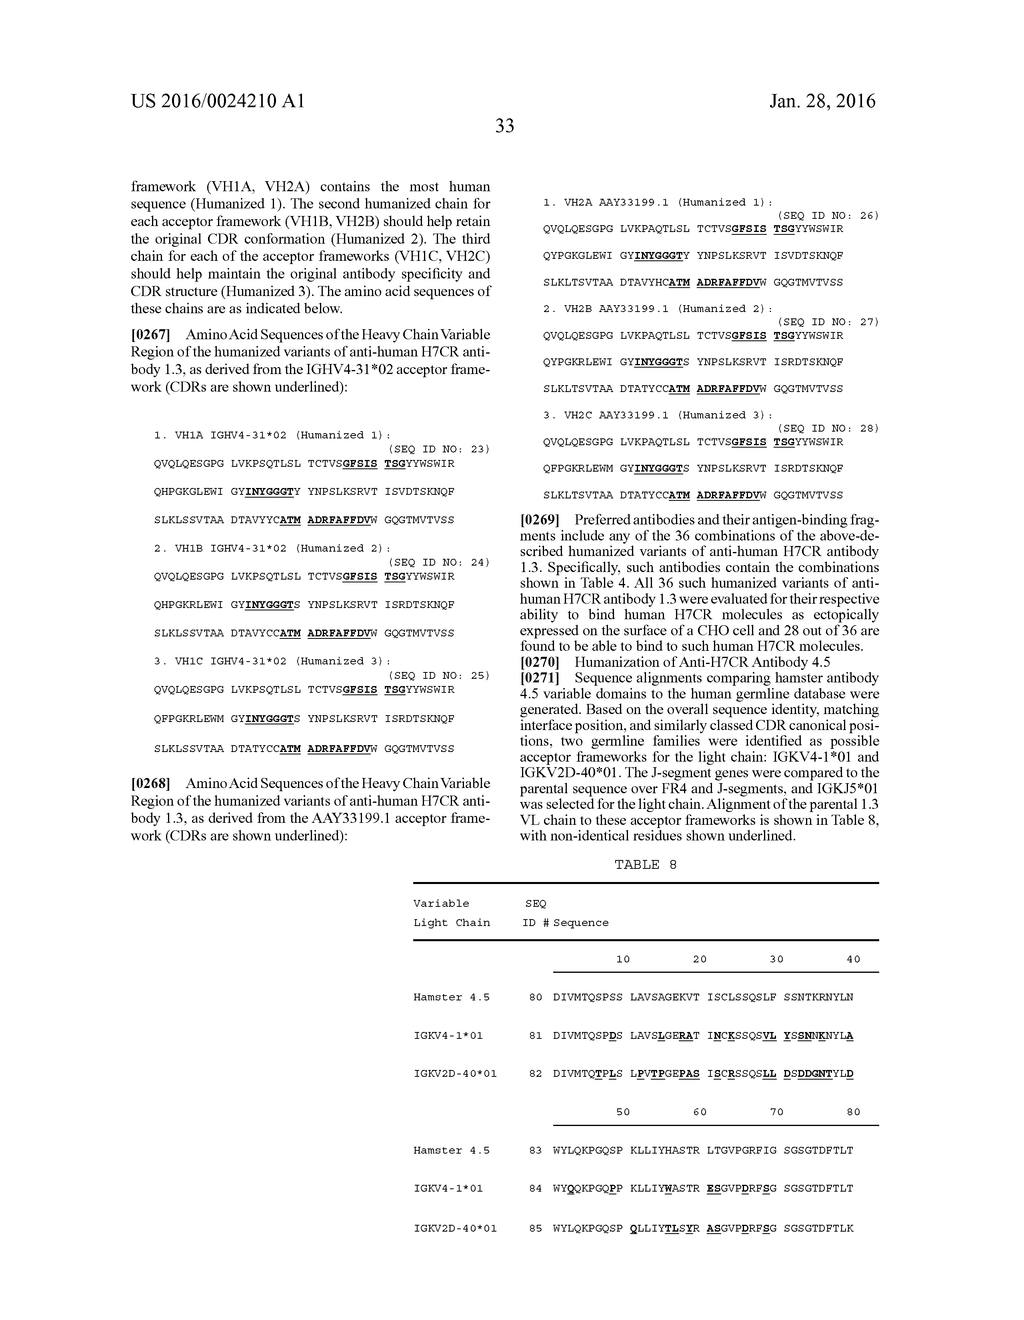 ANTI-H7CR ANTIBODIES - diagram, schematic, and image 60